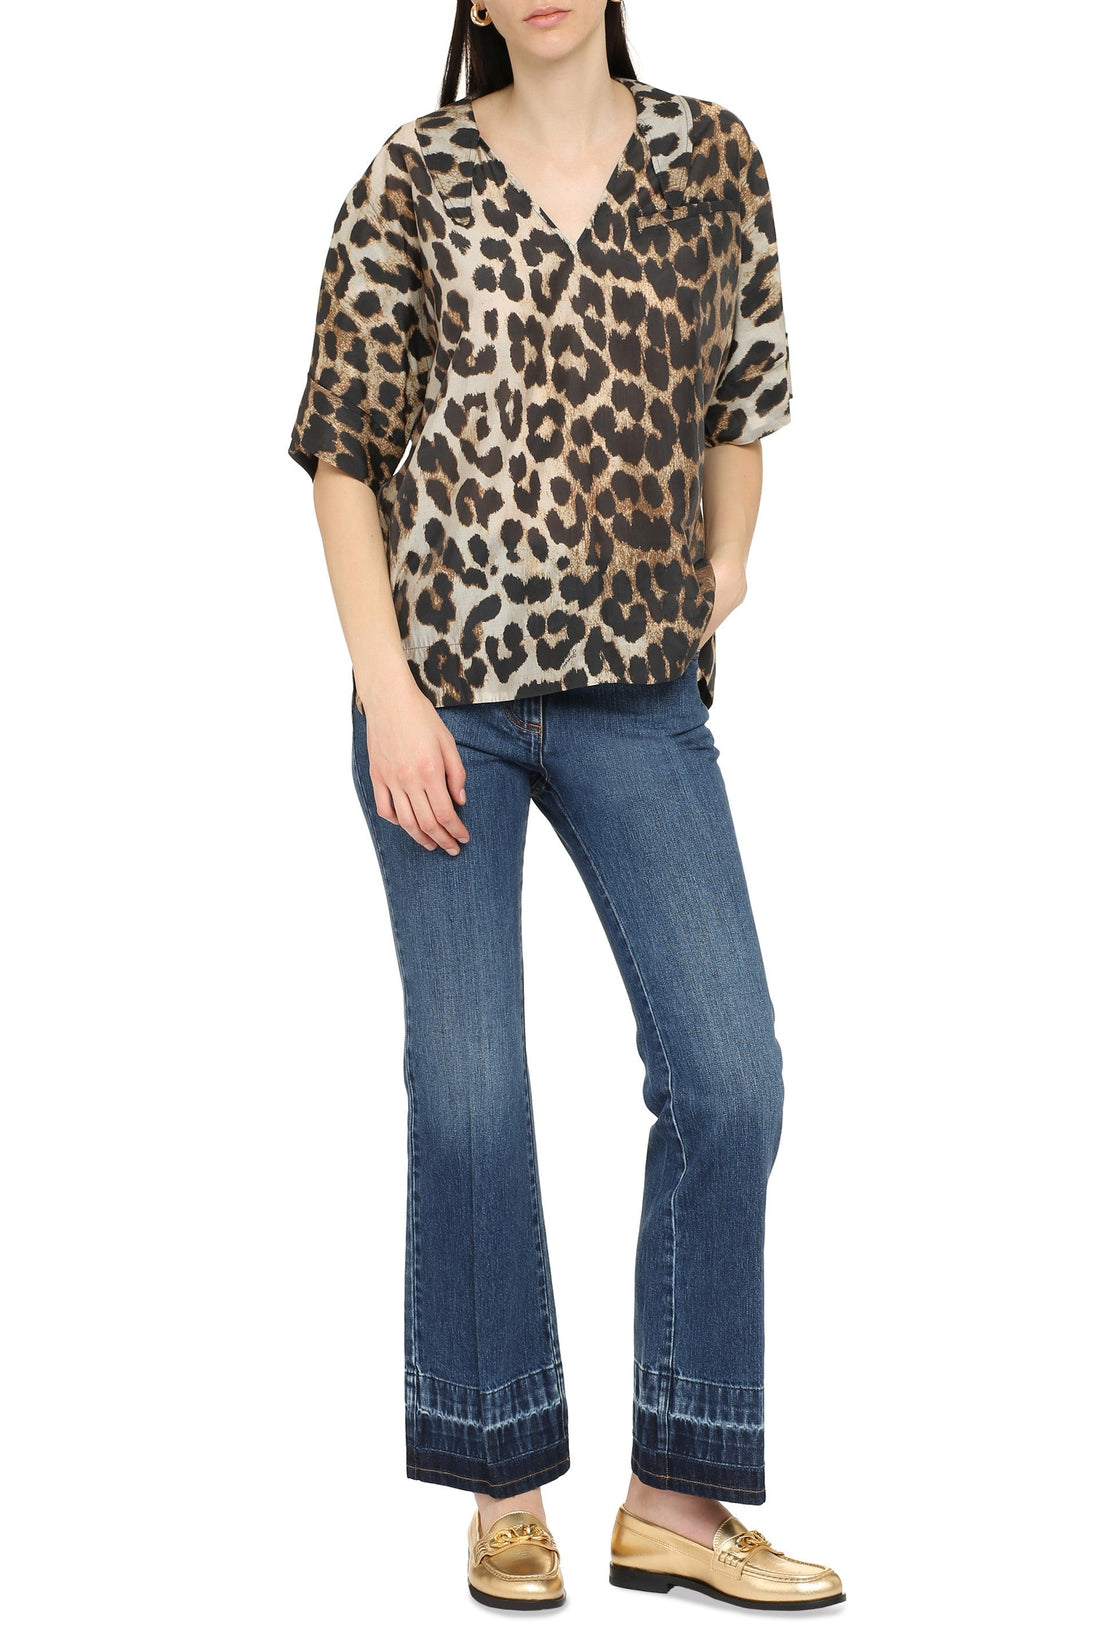 GANNI-OUTLET-SALE-Leopard print shirt-ARCHIVIST